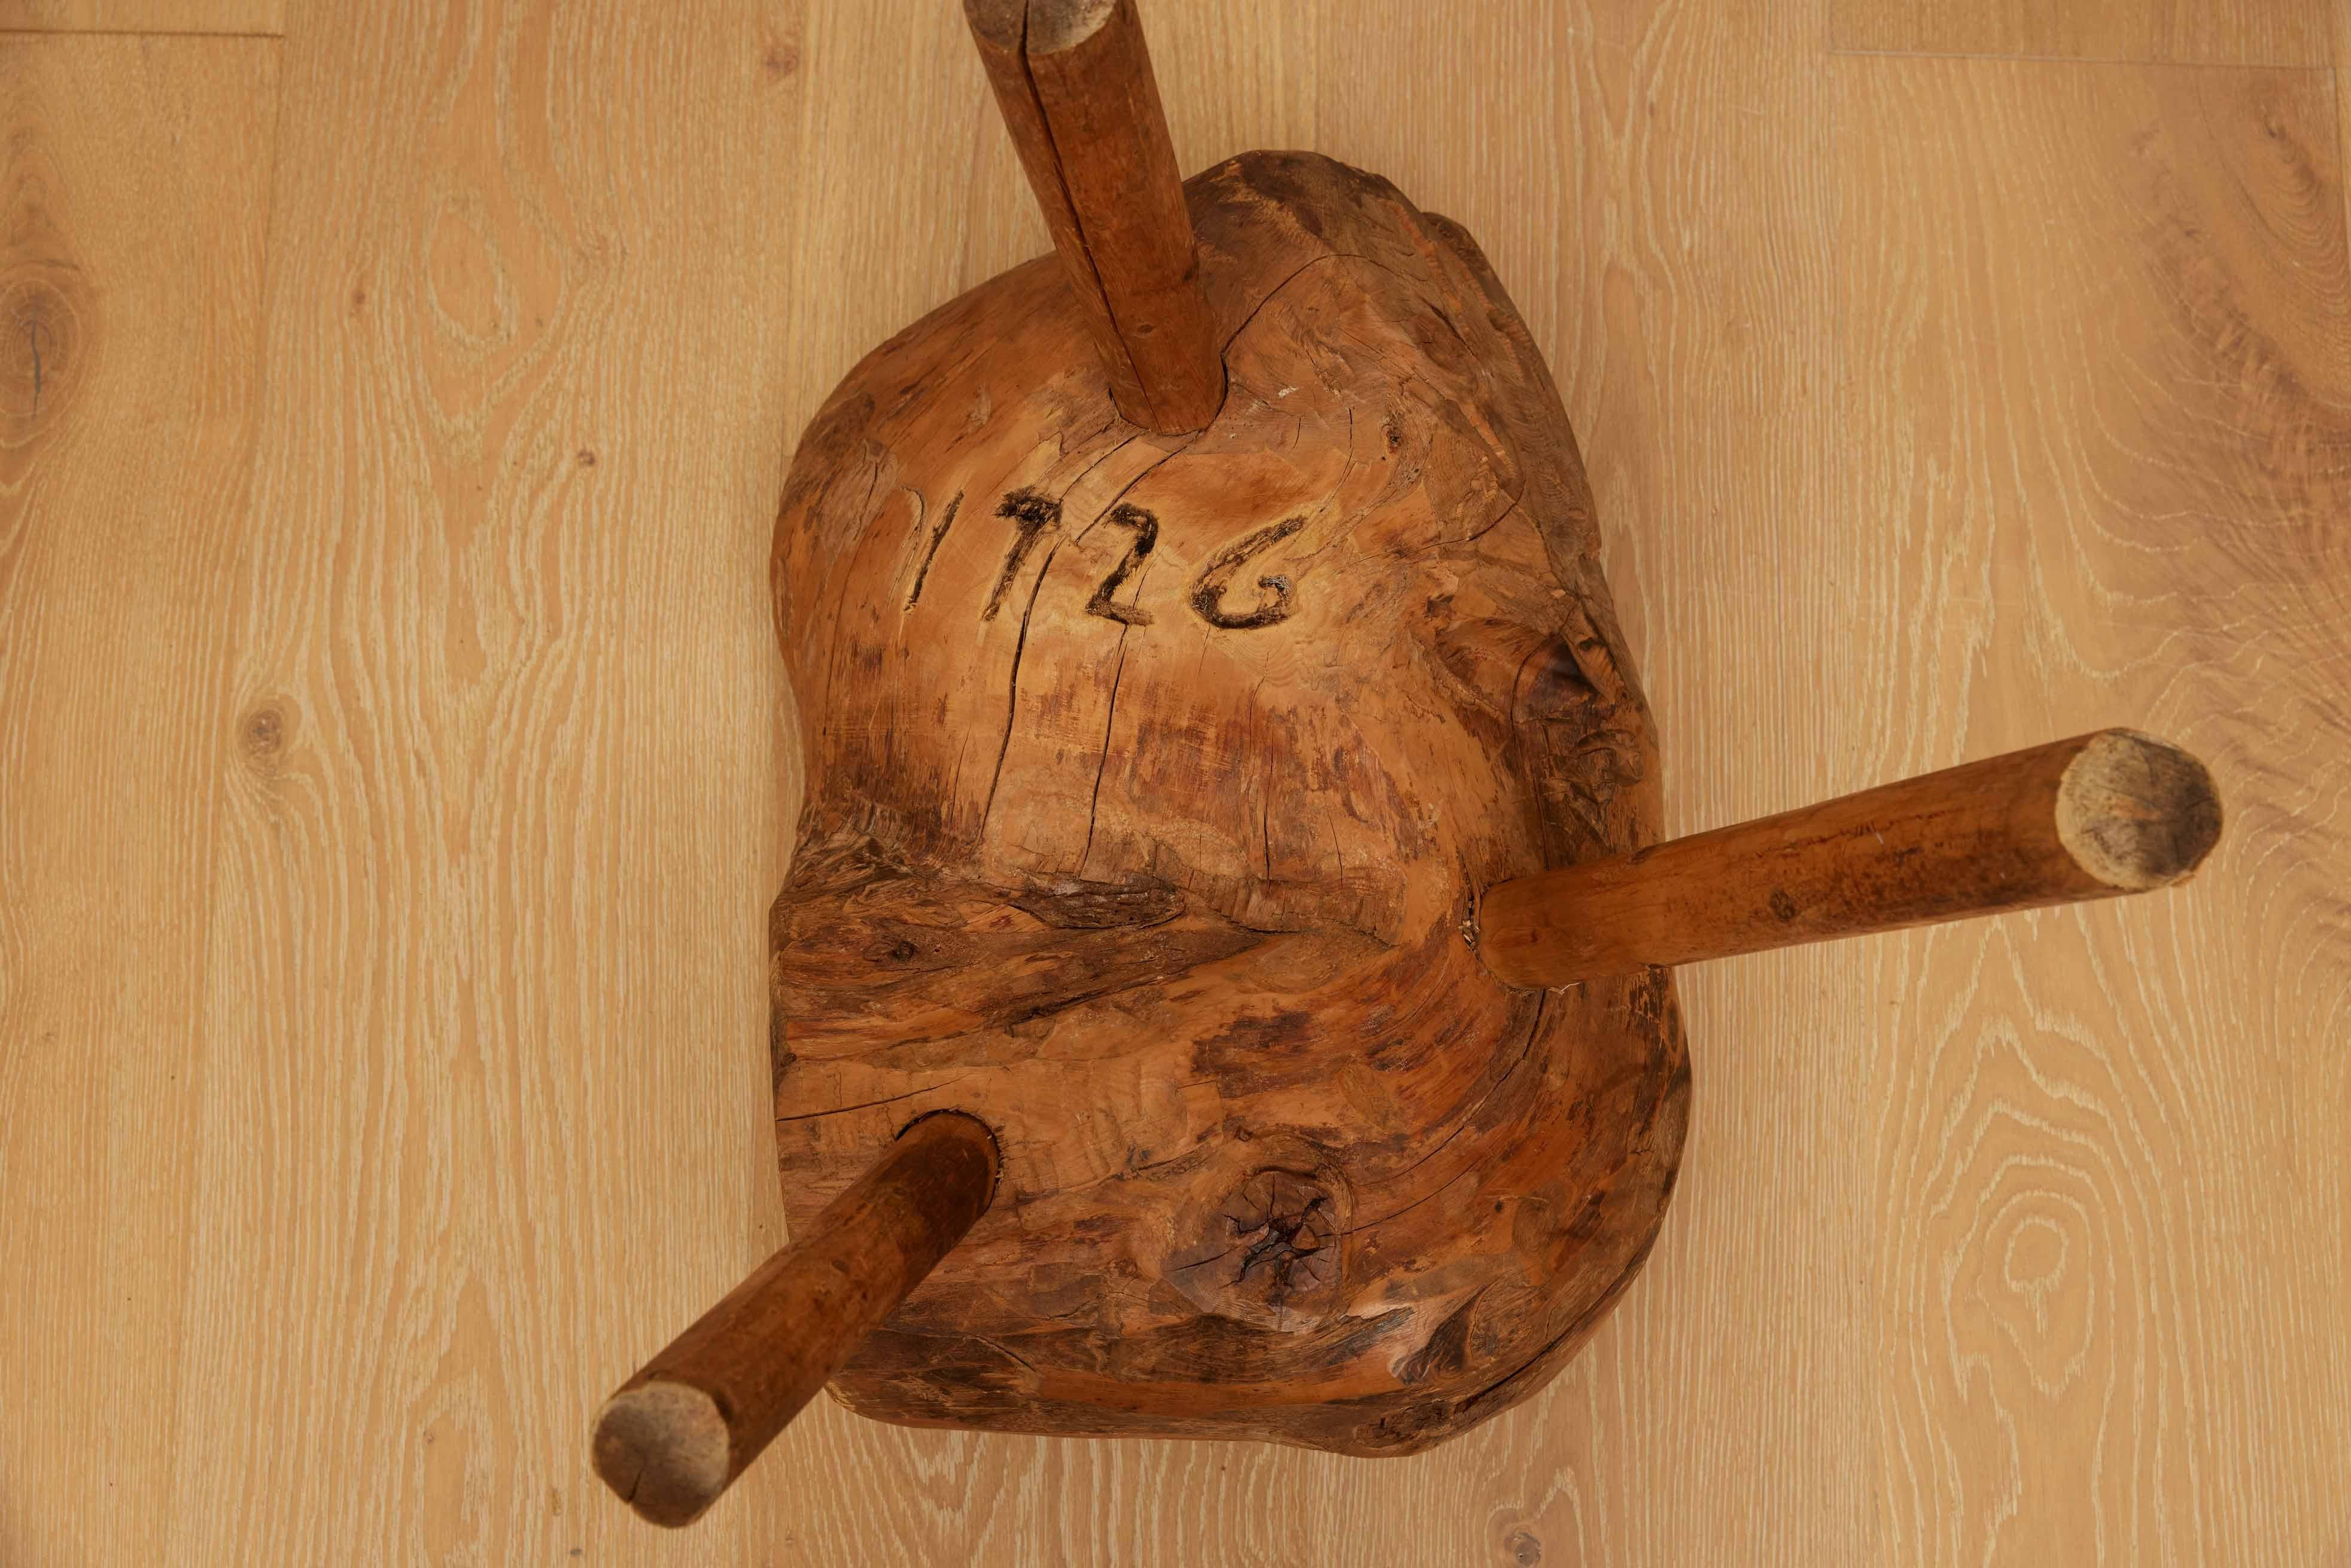 Primitiver Holzblockhocker aus Norwegen, 18.
Ein einzigartiges Meisterwerk, das in den ruhigen Landschaften Norwegens entstanden ist. Dieser Hocker verkörpert die Essenz nordischer Handwerkskunst und bringt einen Hauch von rustikaler Eleganz in